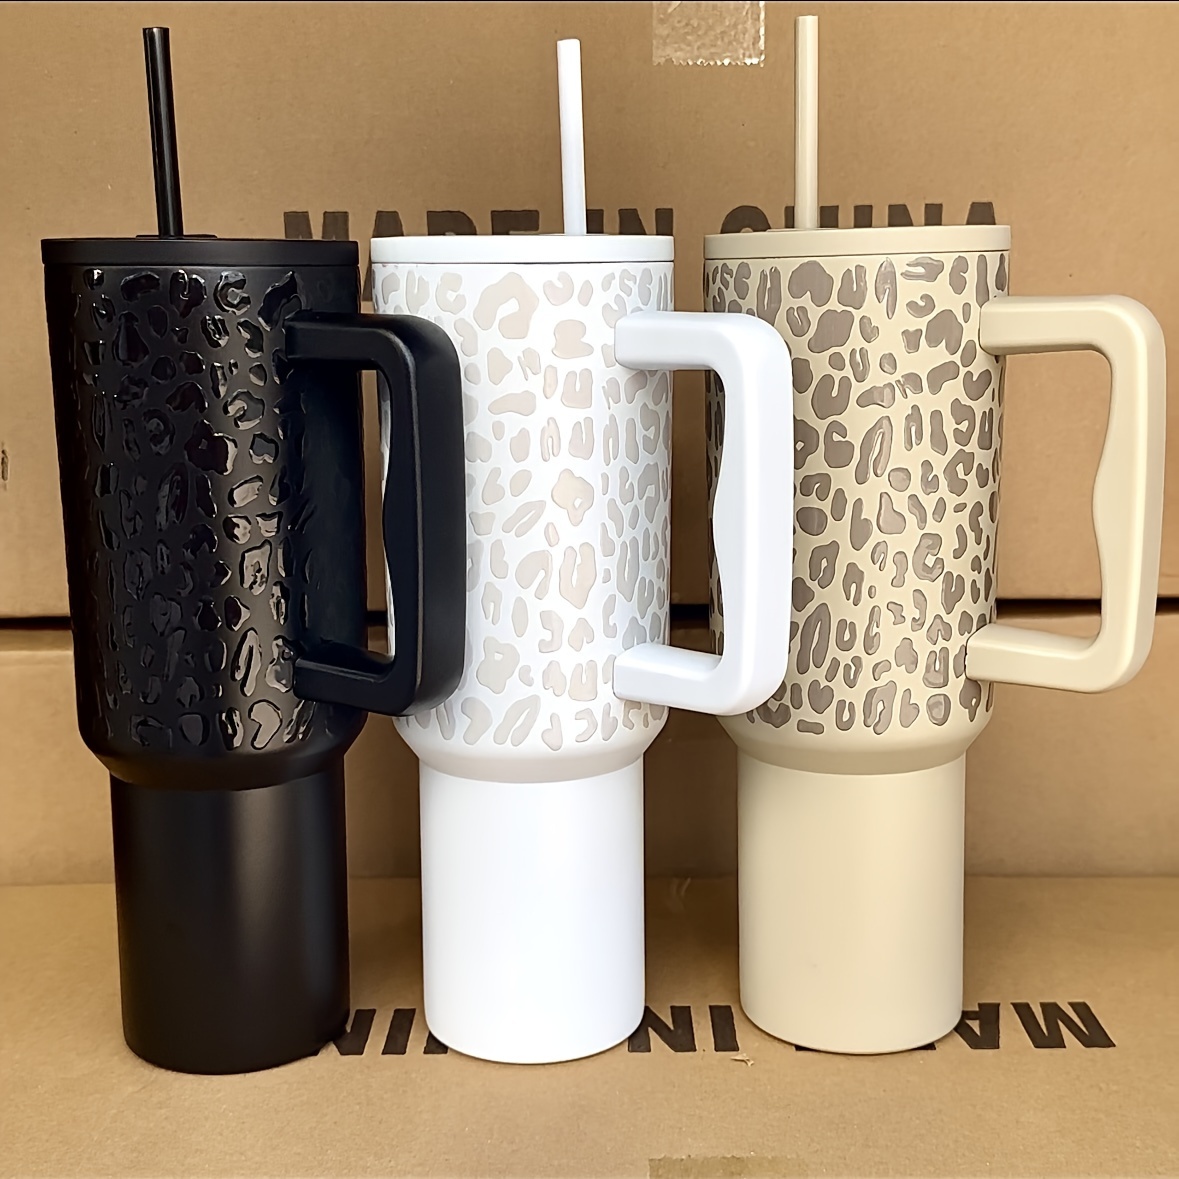 Black Dot Tumbler, Dot Print Skinny Tumbler with Lid and Straw, Coffee Mug,  20 oz Simple Modern Travel Mug Cups Black Gifts for Birthday Christmas